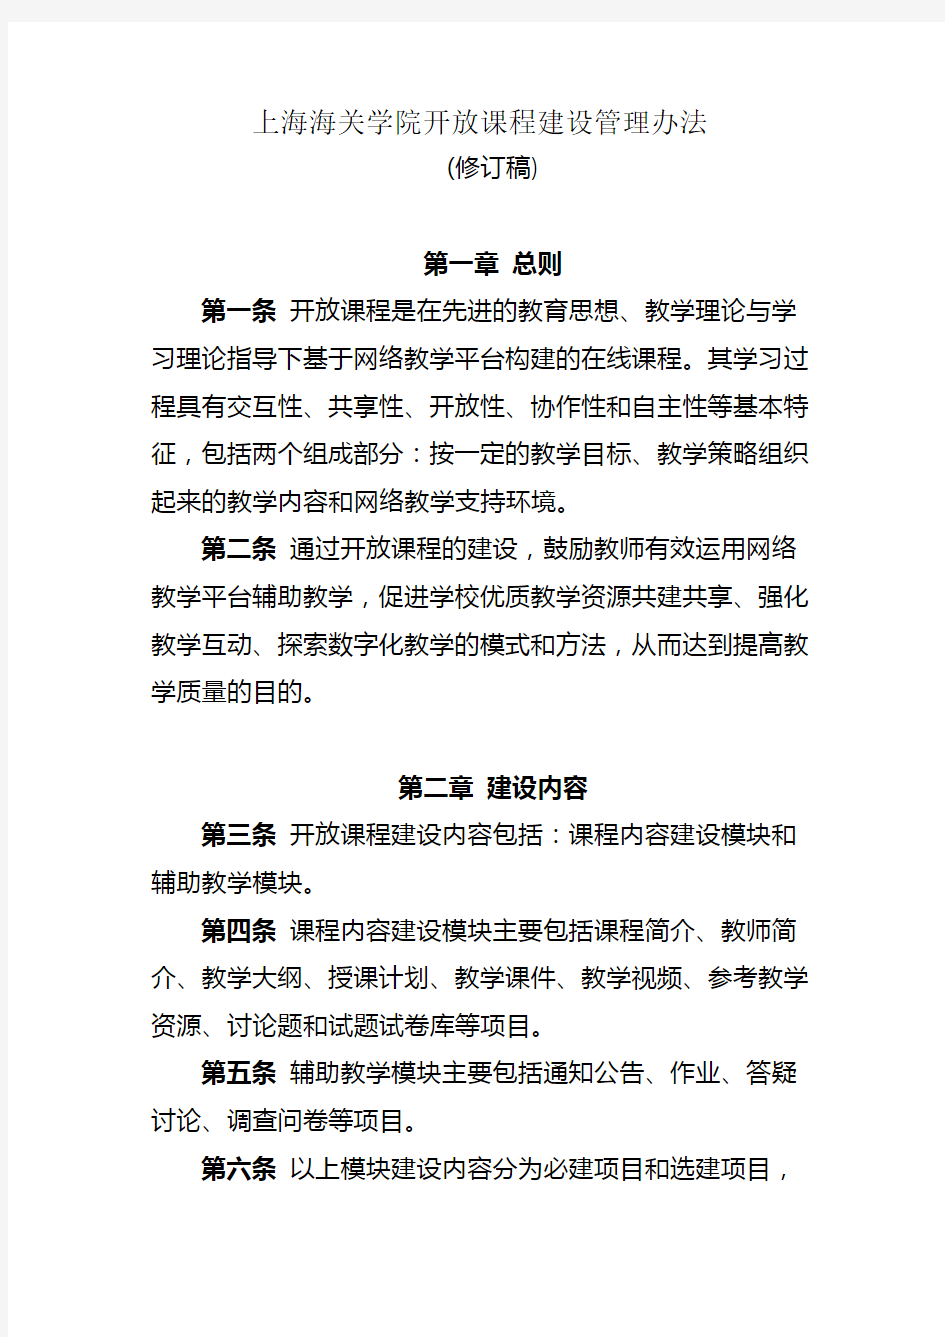 (完整word版)上海海关学院开放课程建设管理办法